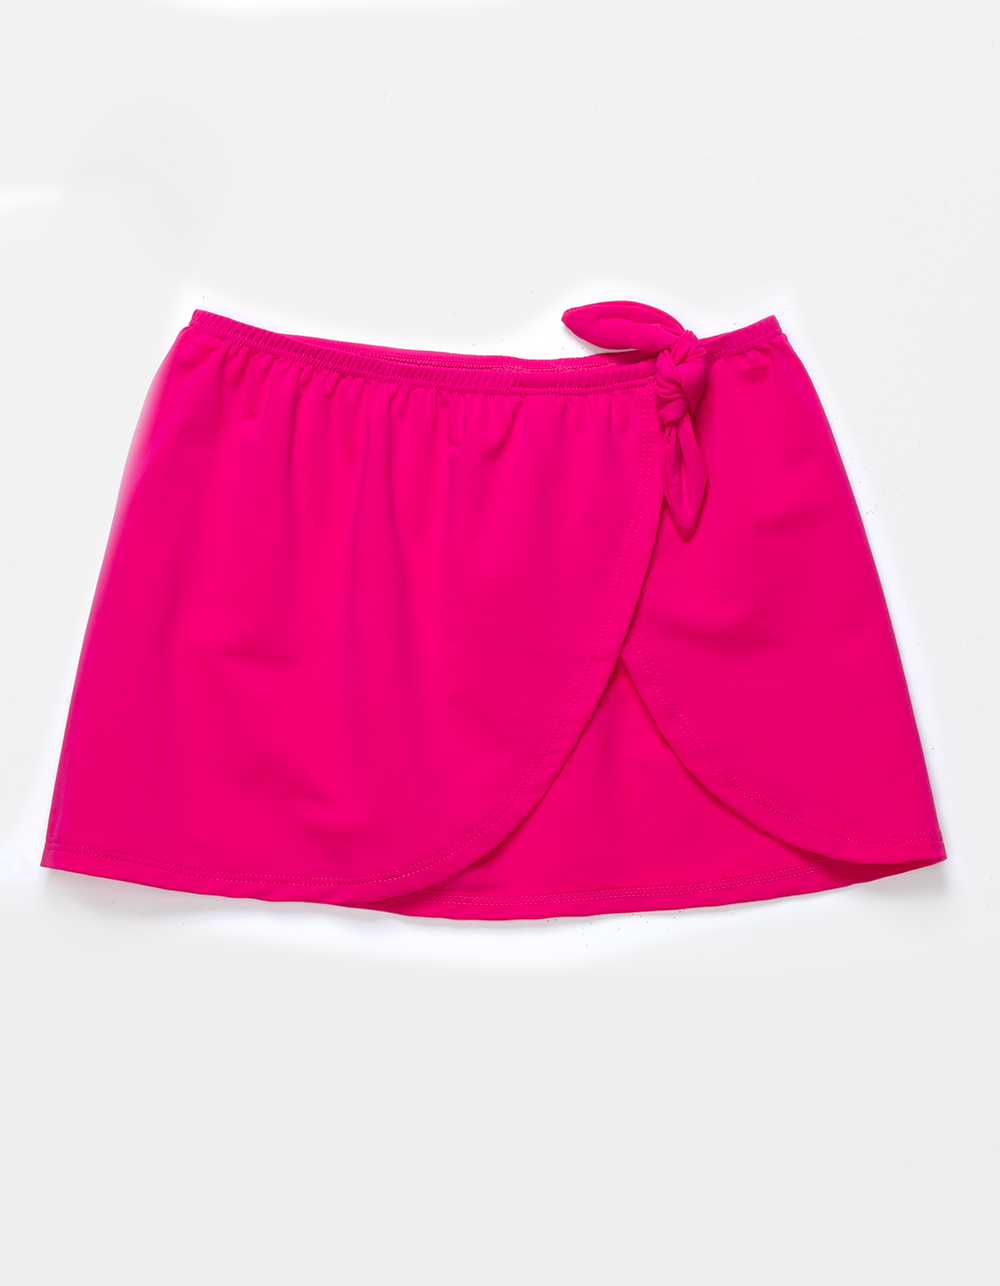 CORAL & REEF Kiko Girls Coverup Skirt